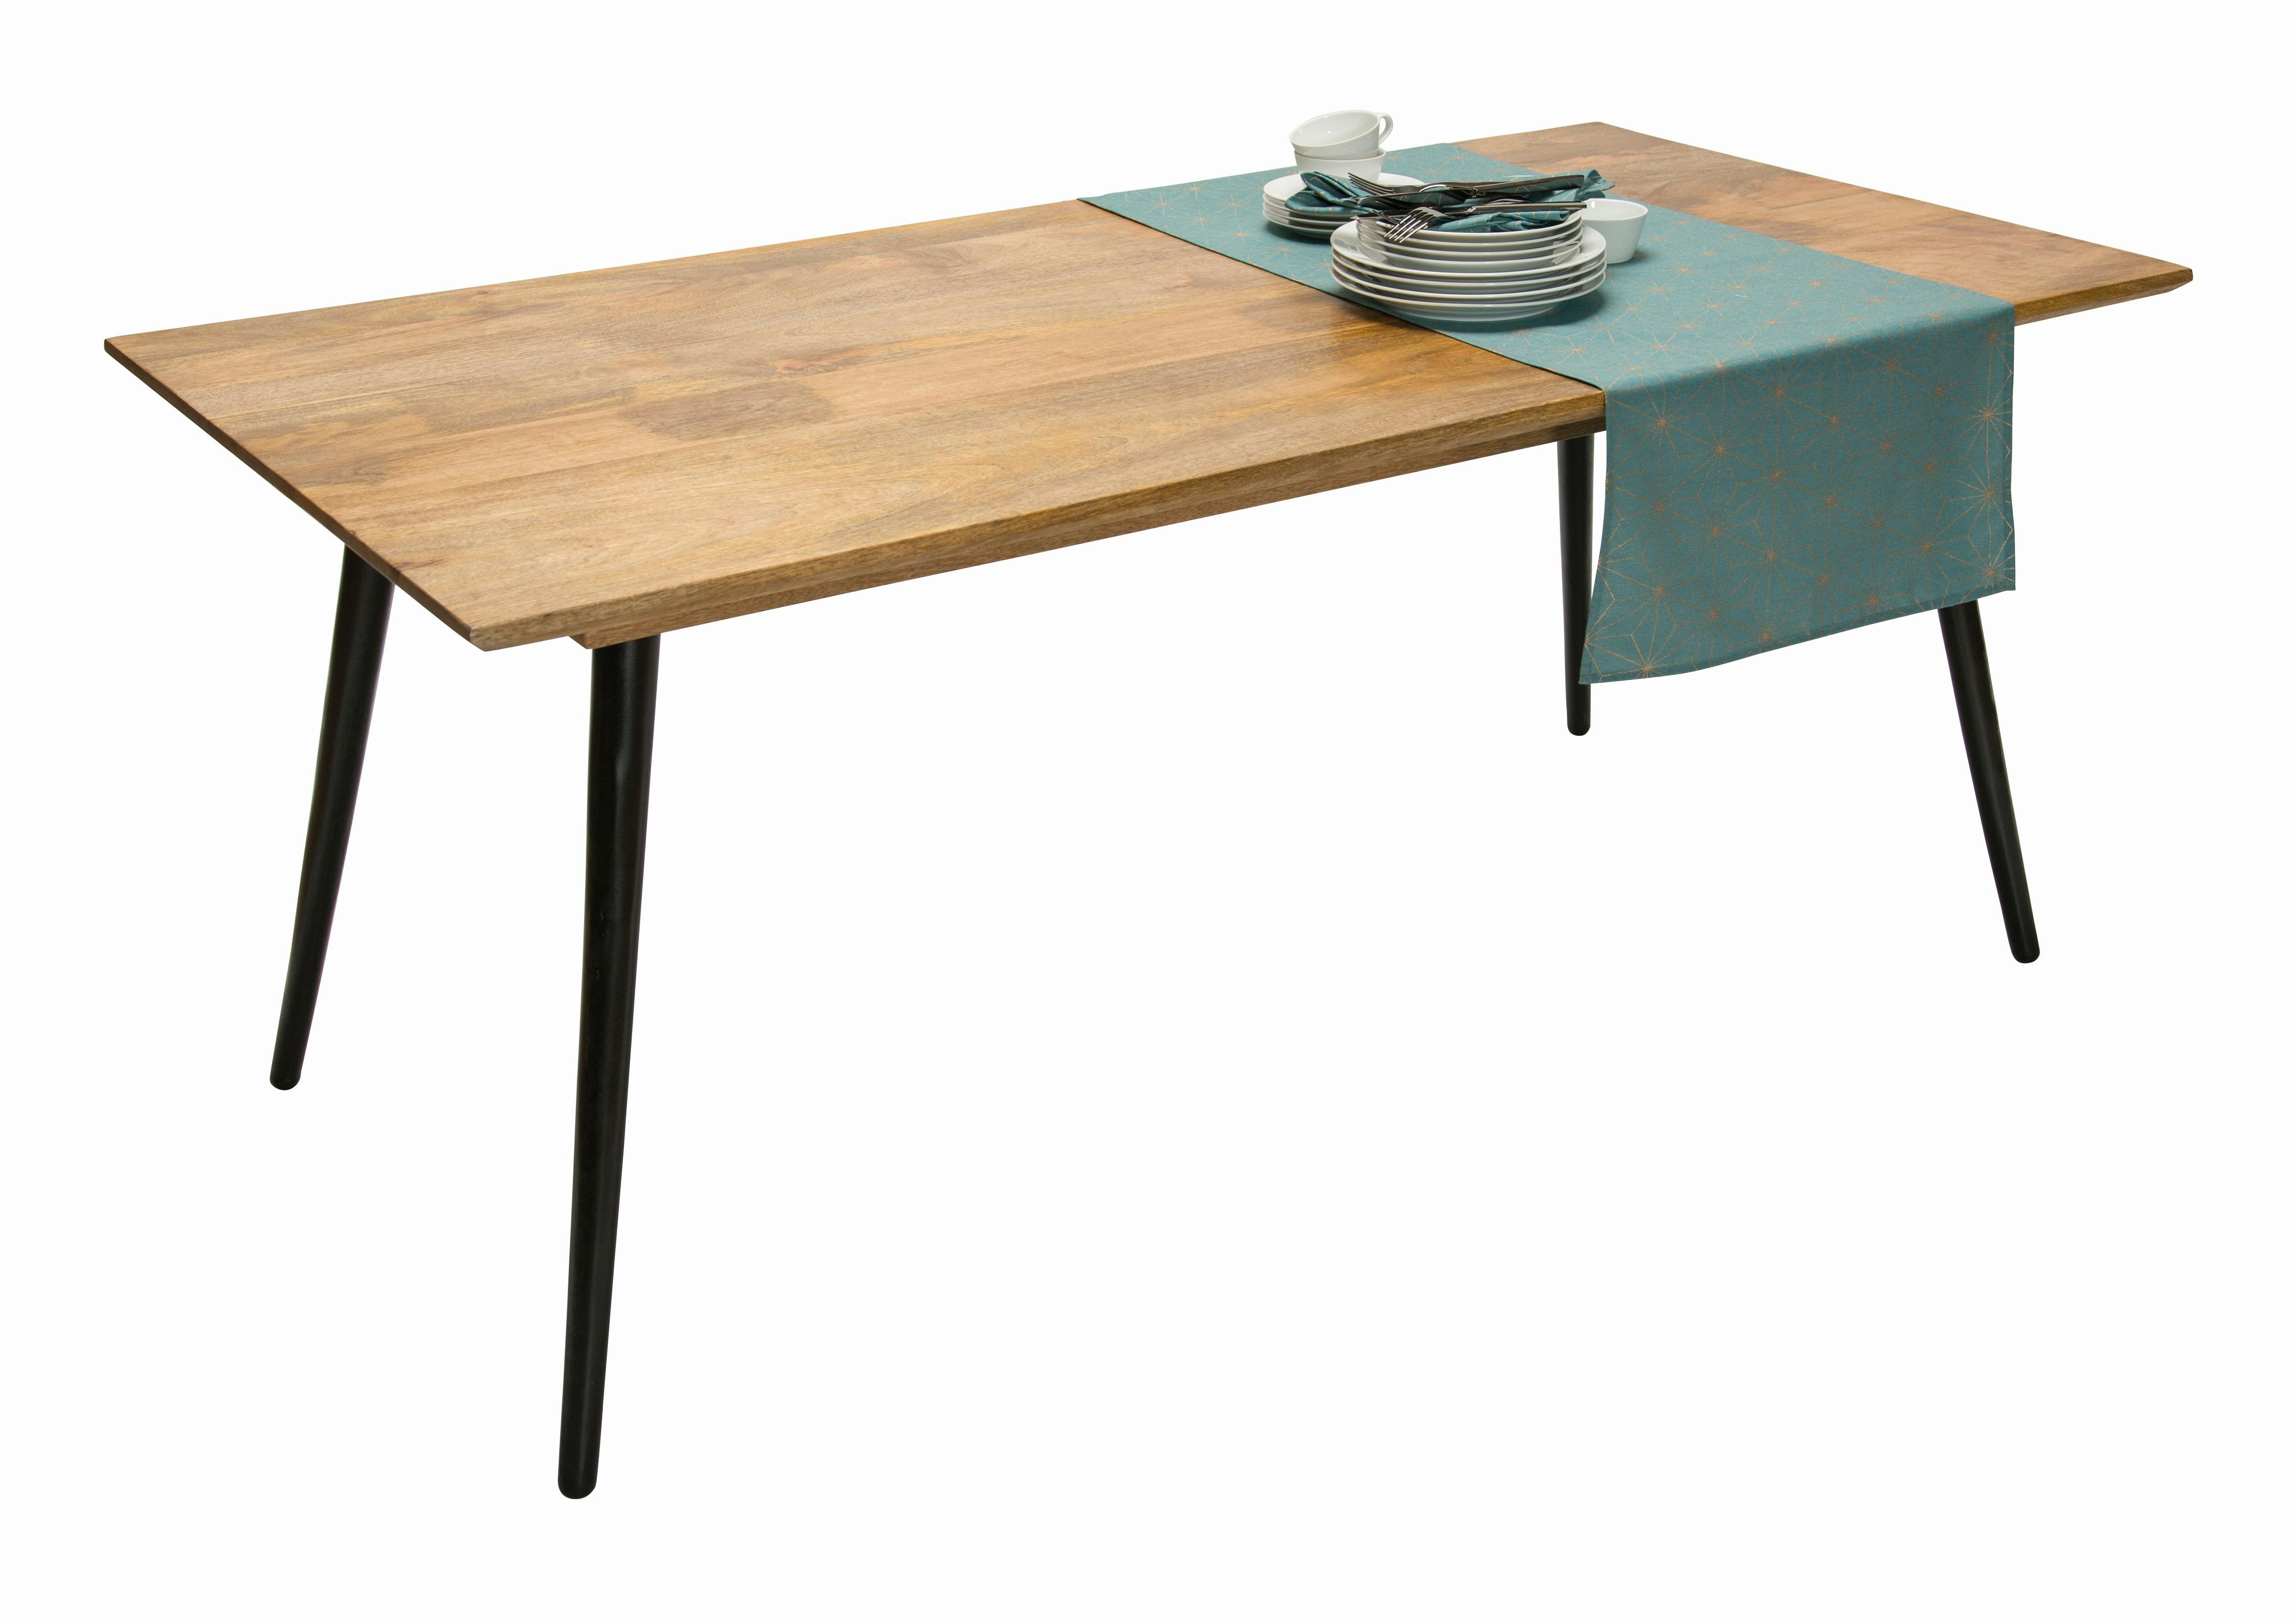 SIT Möbel Tisch Tom Tailor | 4 Metallbeine | Platte Mangoholz | natur | B  140 x T 80 x H 77 cm | 12816-01 | Serie TOM TAILOR | METRO Marktplatz